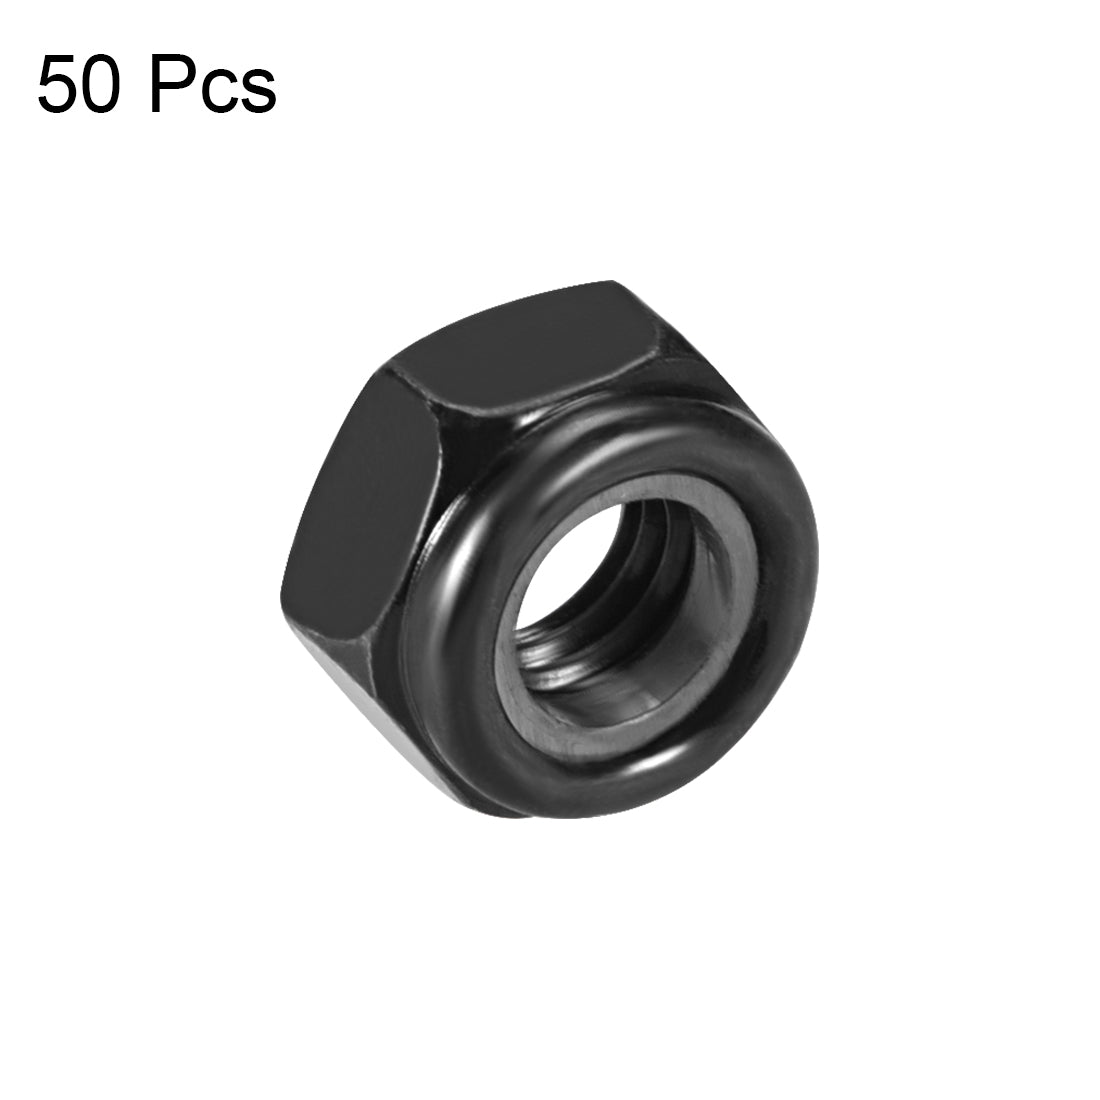 uxcell Uxcell M6x1mm Hex Lock Nuts Carbon Steel Nylon Insert Self-Lock Nuts, 50Pcs Black